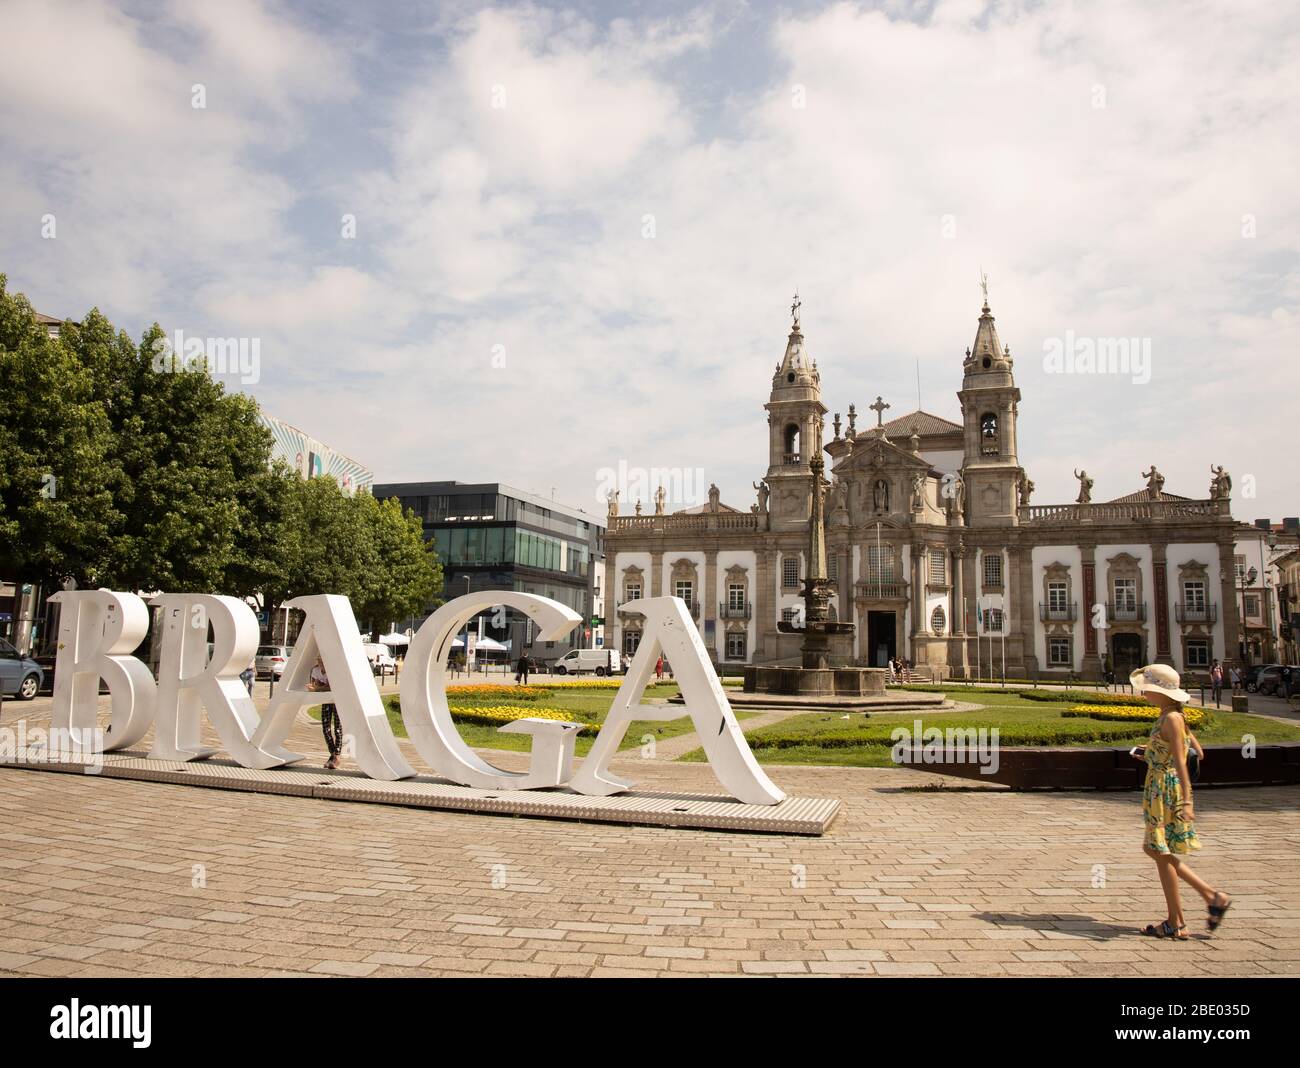 Gran cartel de Braga con chica caminando en primer plano y hotel villa gale  en el fondo Braga, Portugal Fotografía de stock - Alamy